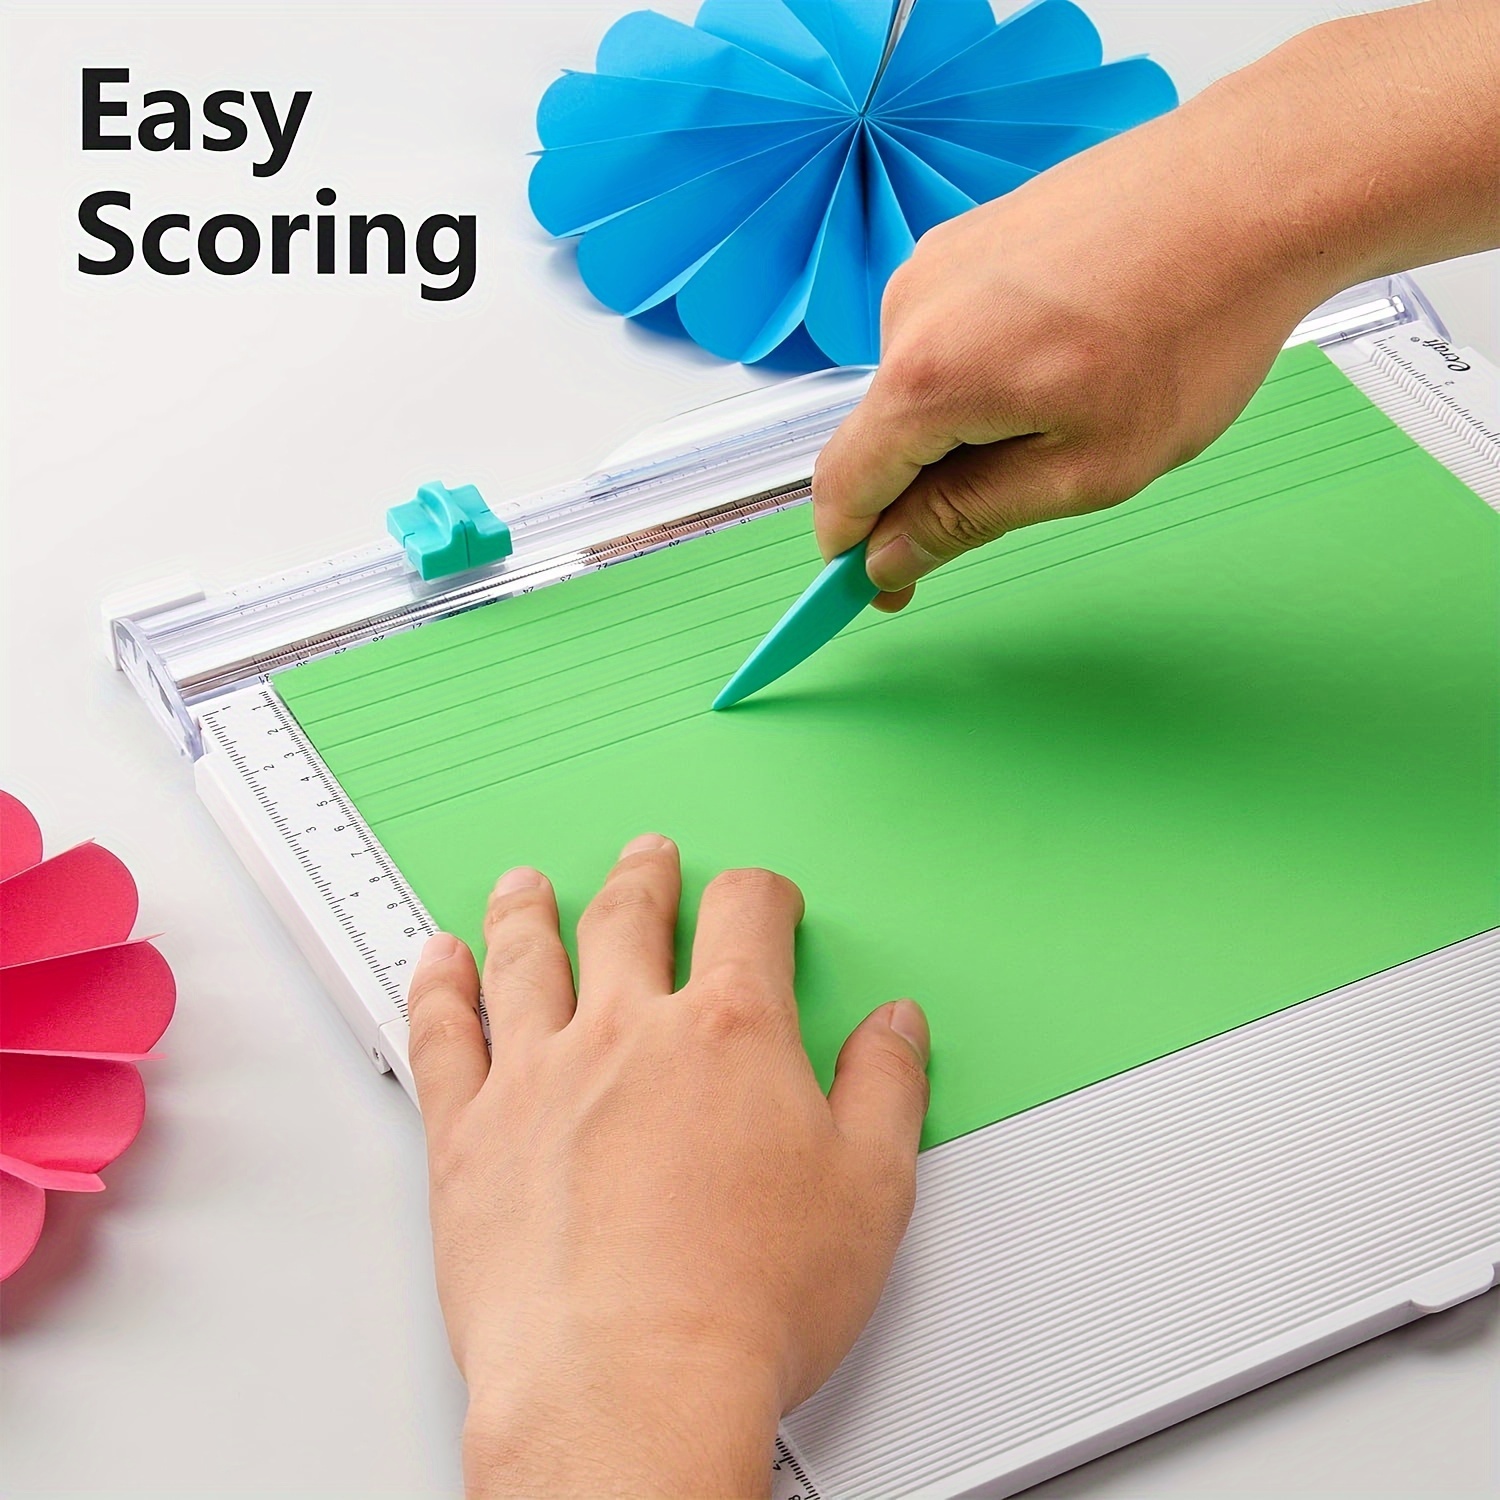 Scoring Board - Scoreboard for Crafting, Scoring Tool, Envelope